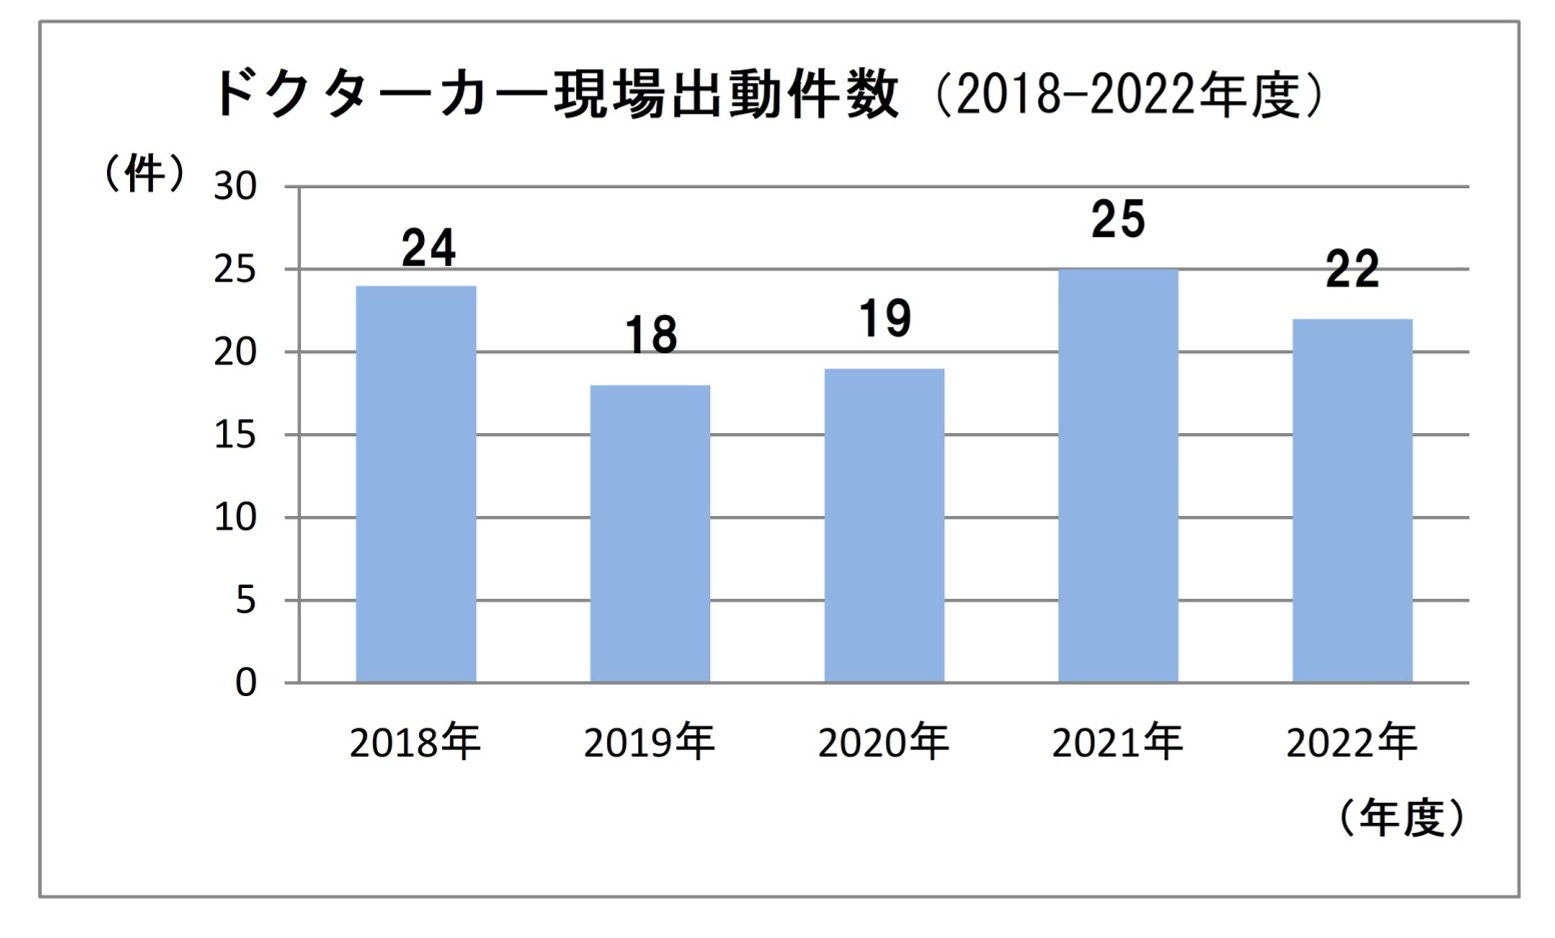 ドクターカー現場出動件数（2018〜2022年度）